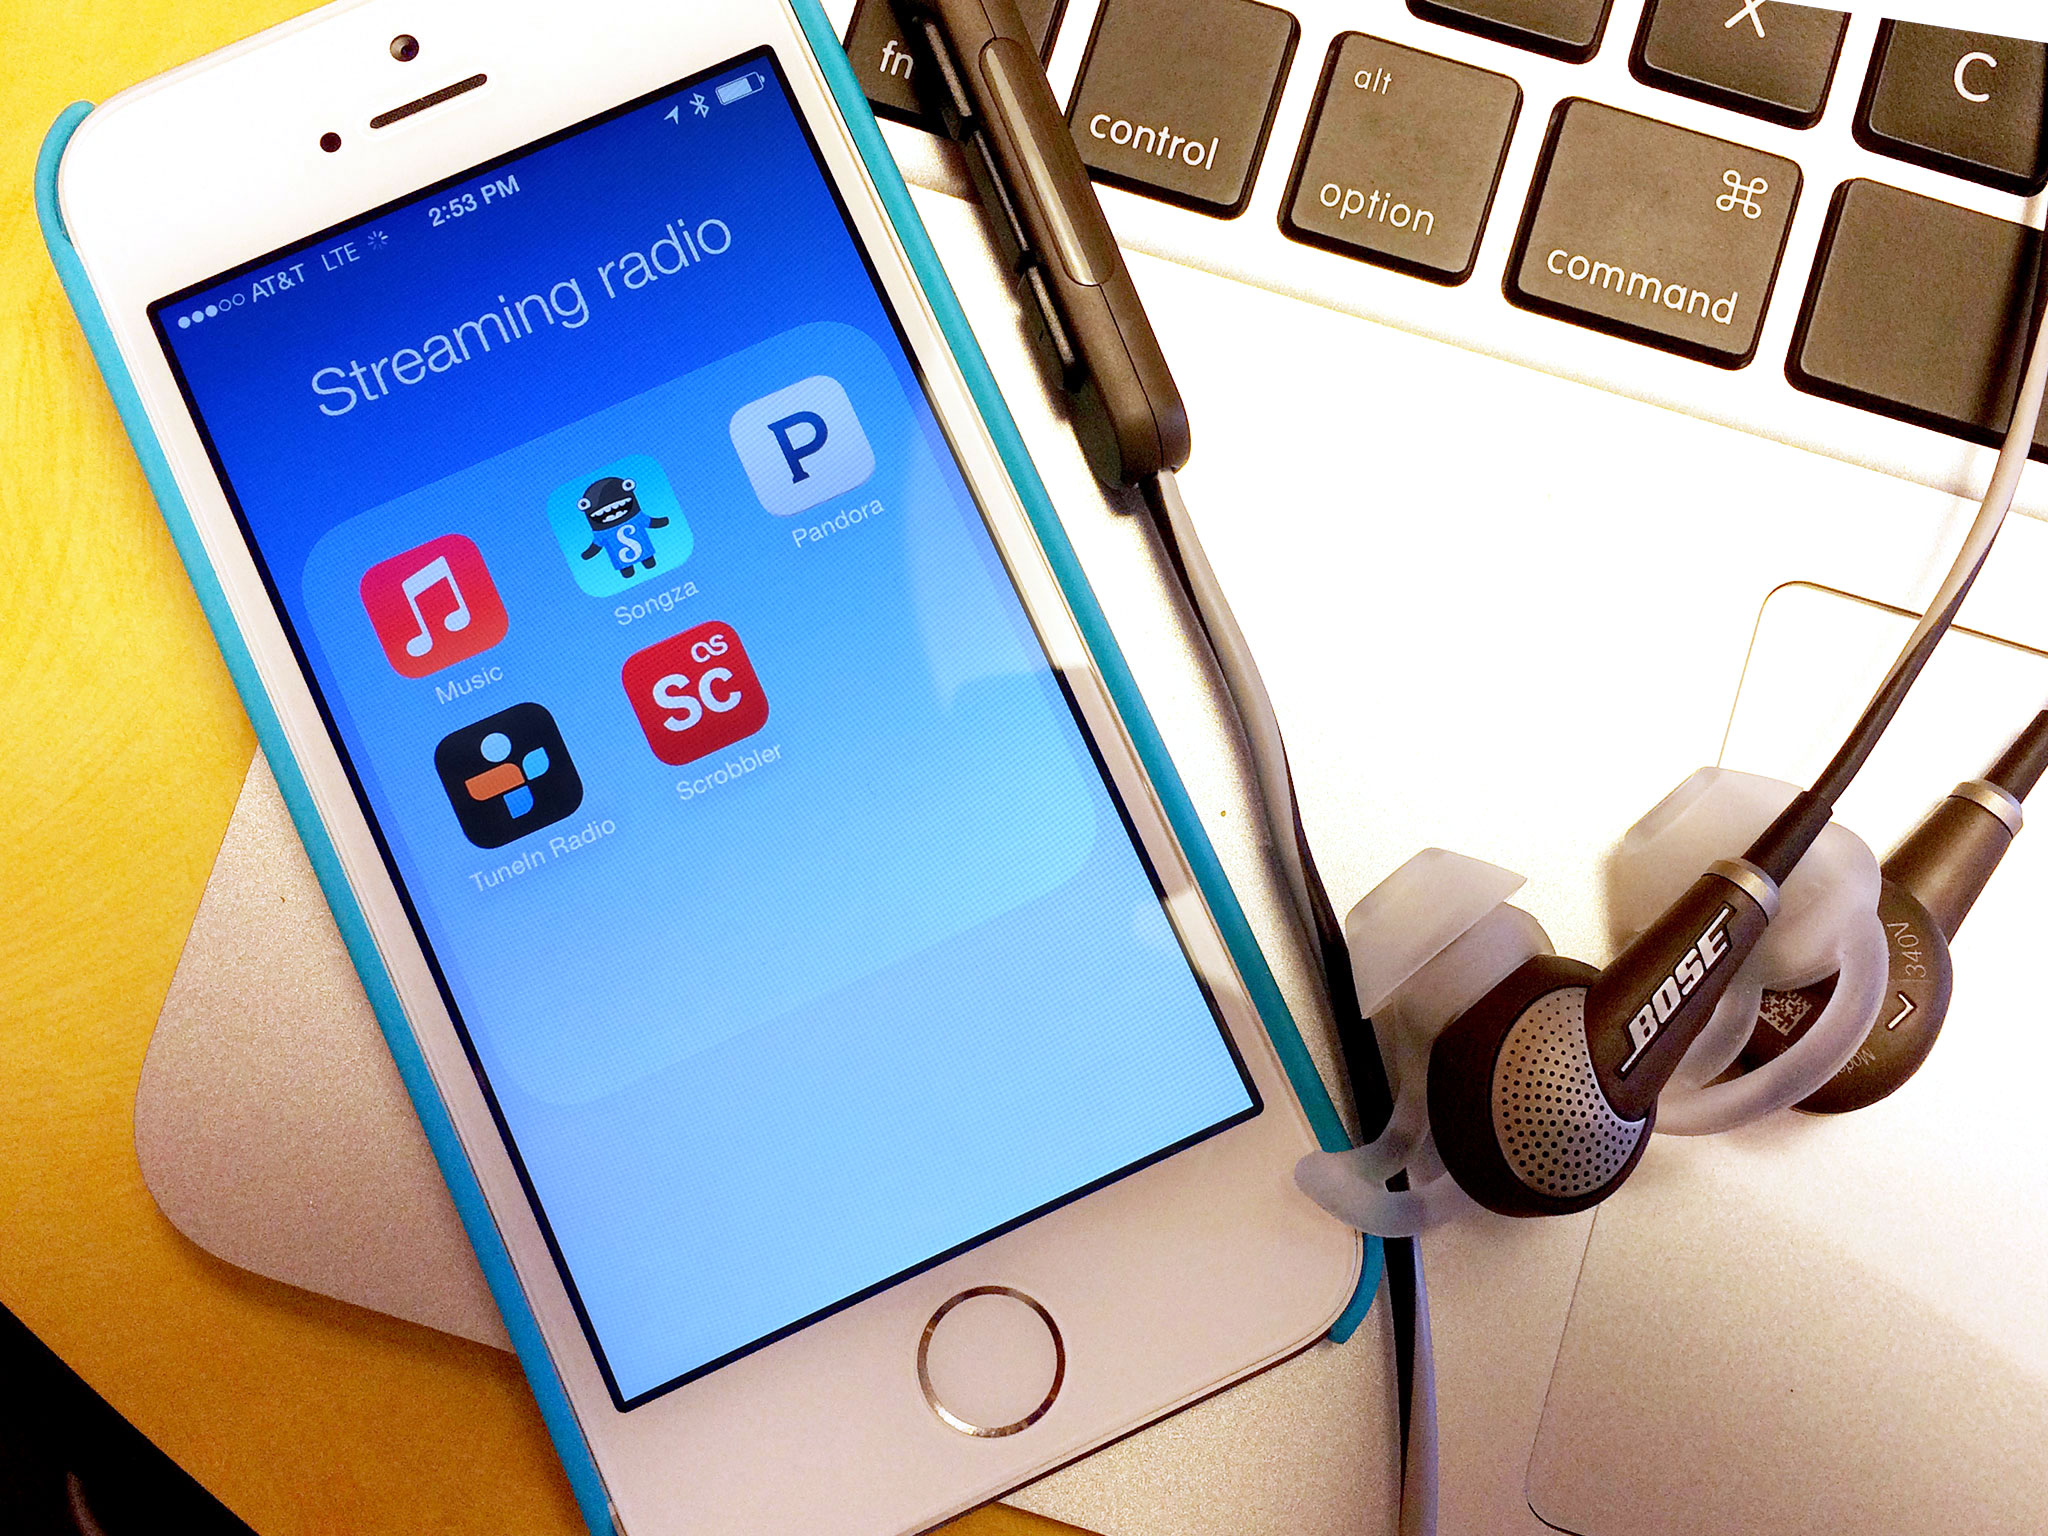 iTunes Radio vs Pandora vs Songza vs TuneIn Radio vs Last.fm: Radio streaming music services compared!